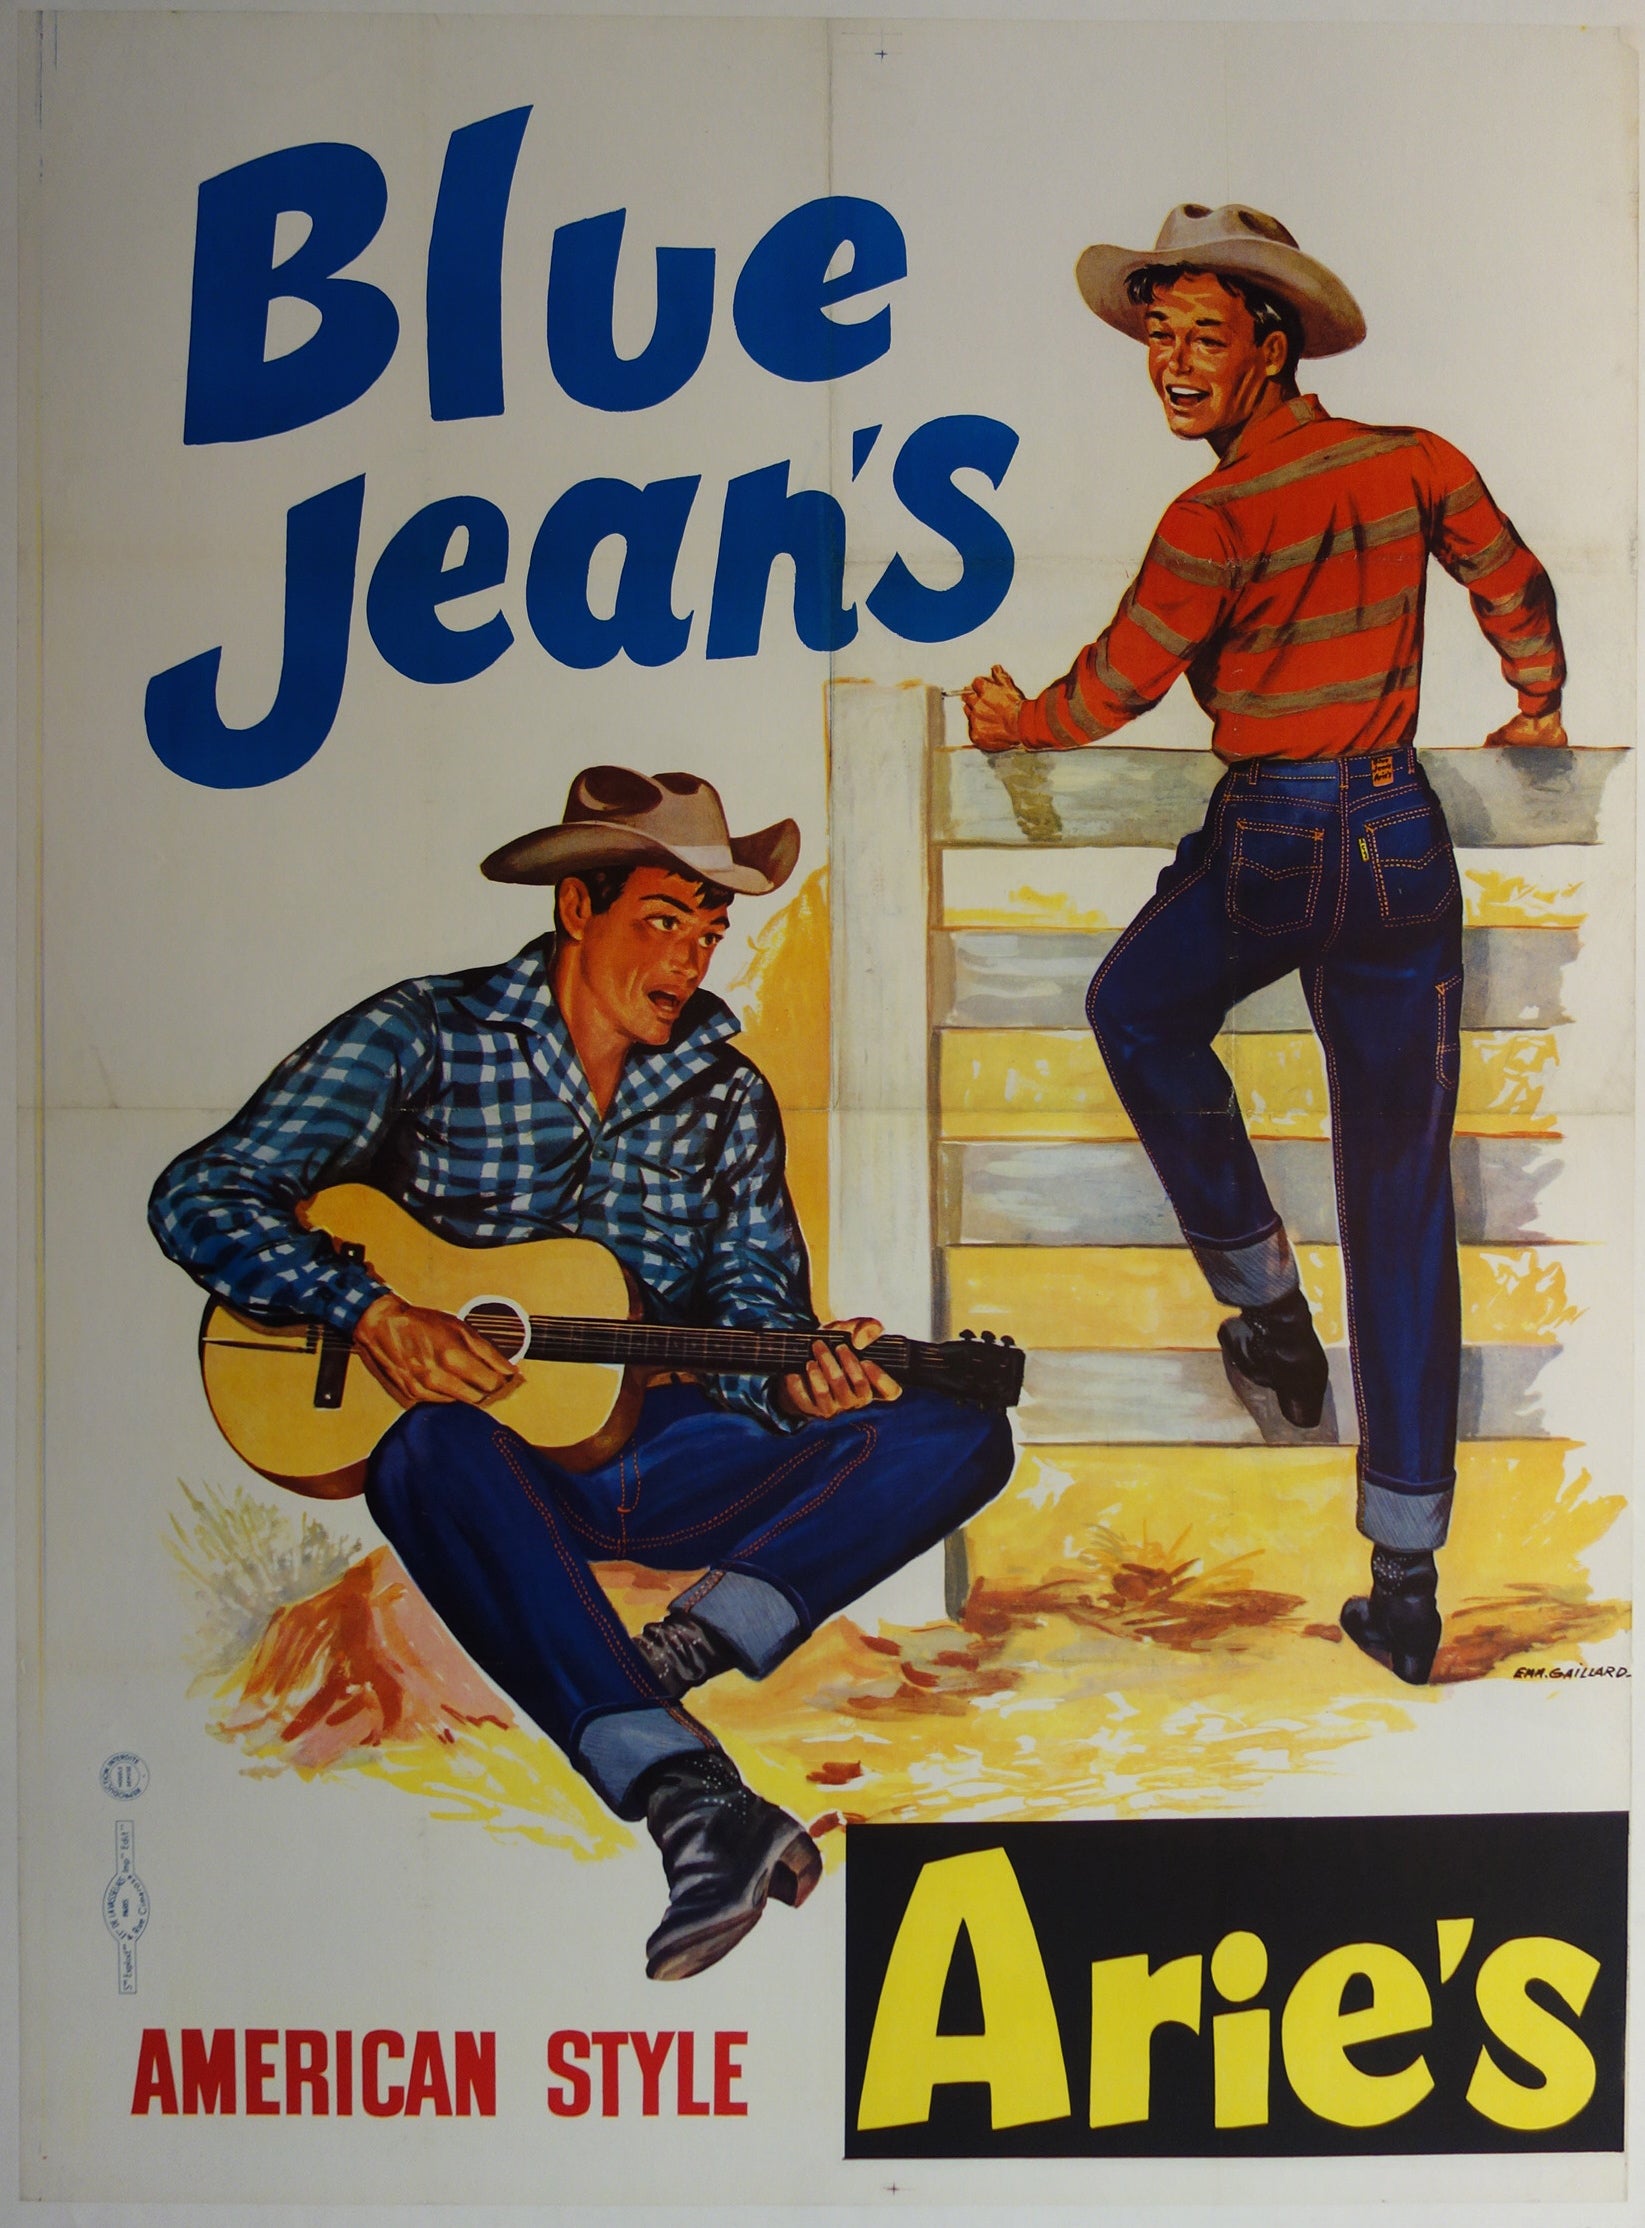 Blue Jean's